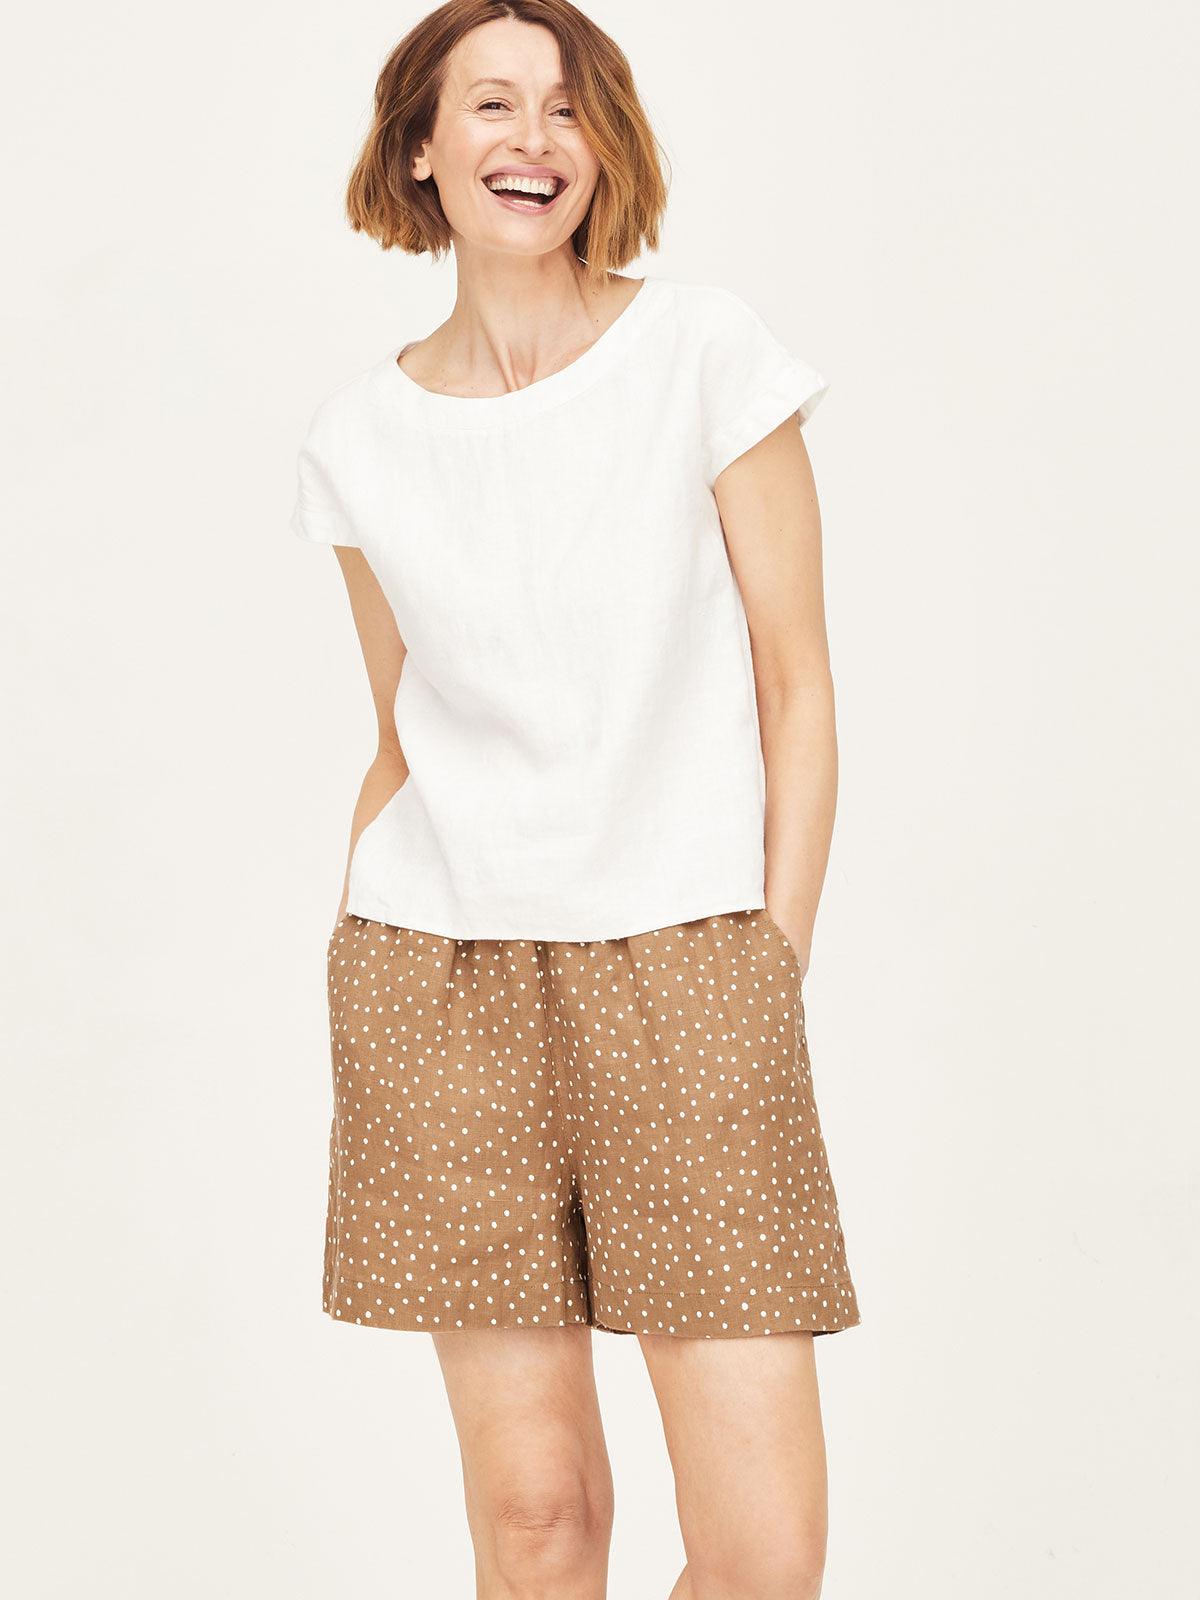 Jasmine Hemp Spot Print Shorts - Thought Clothing UK